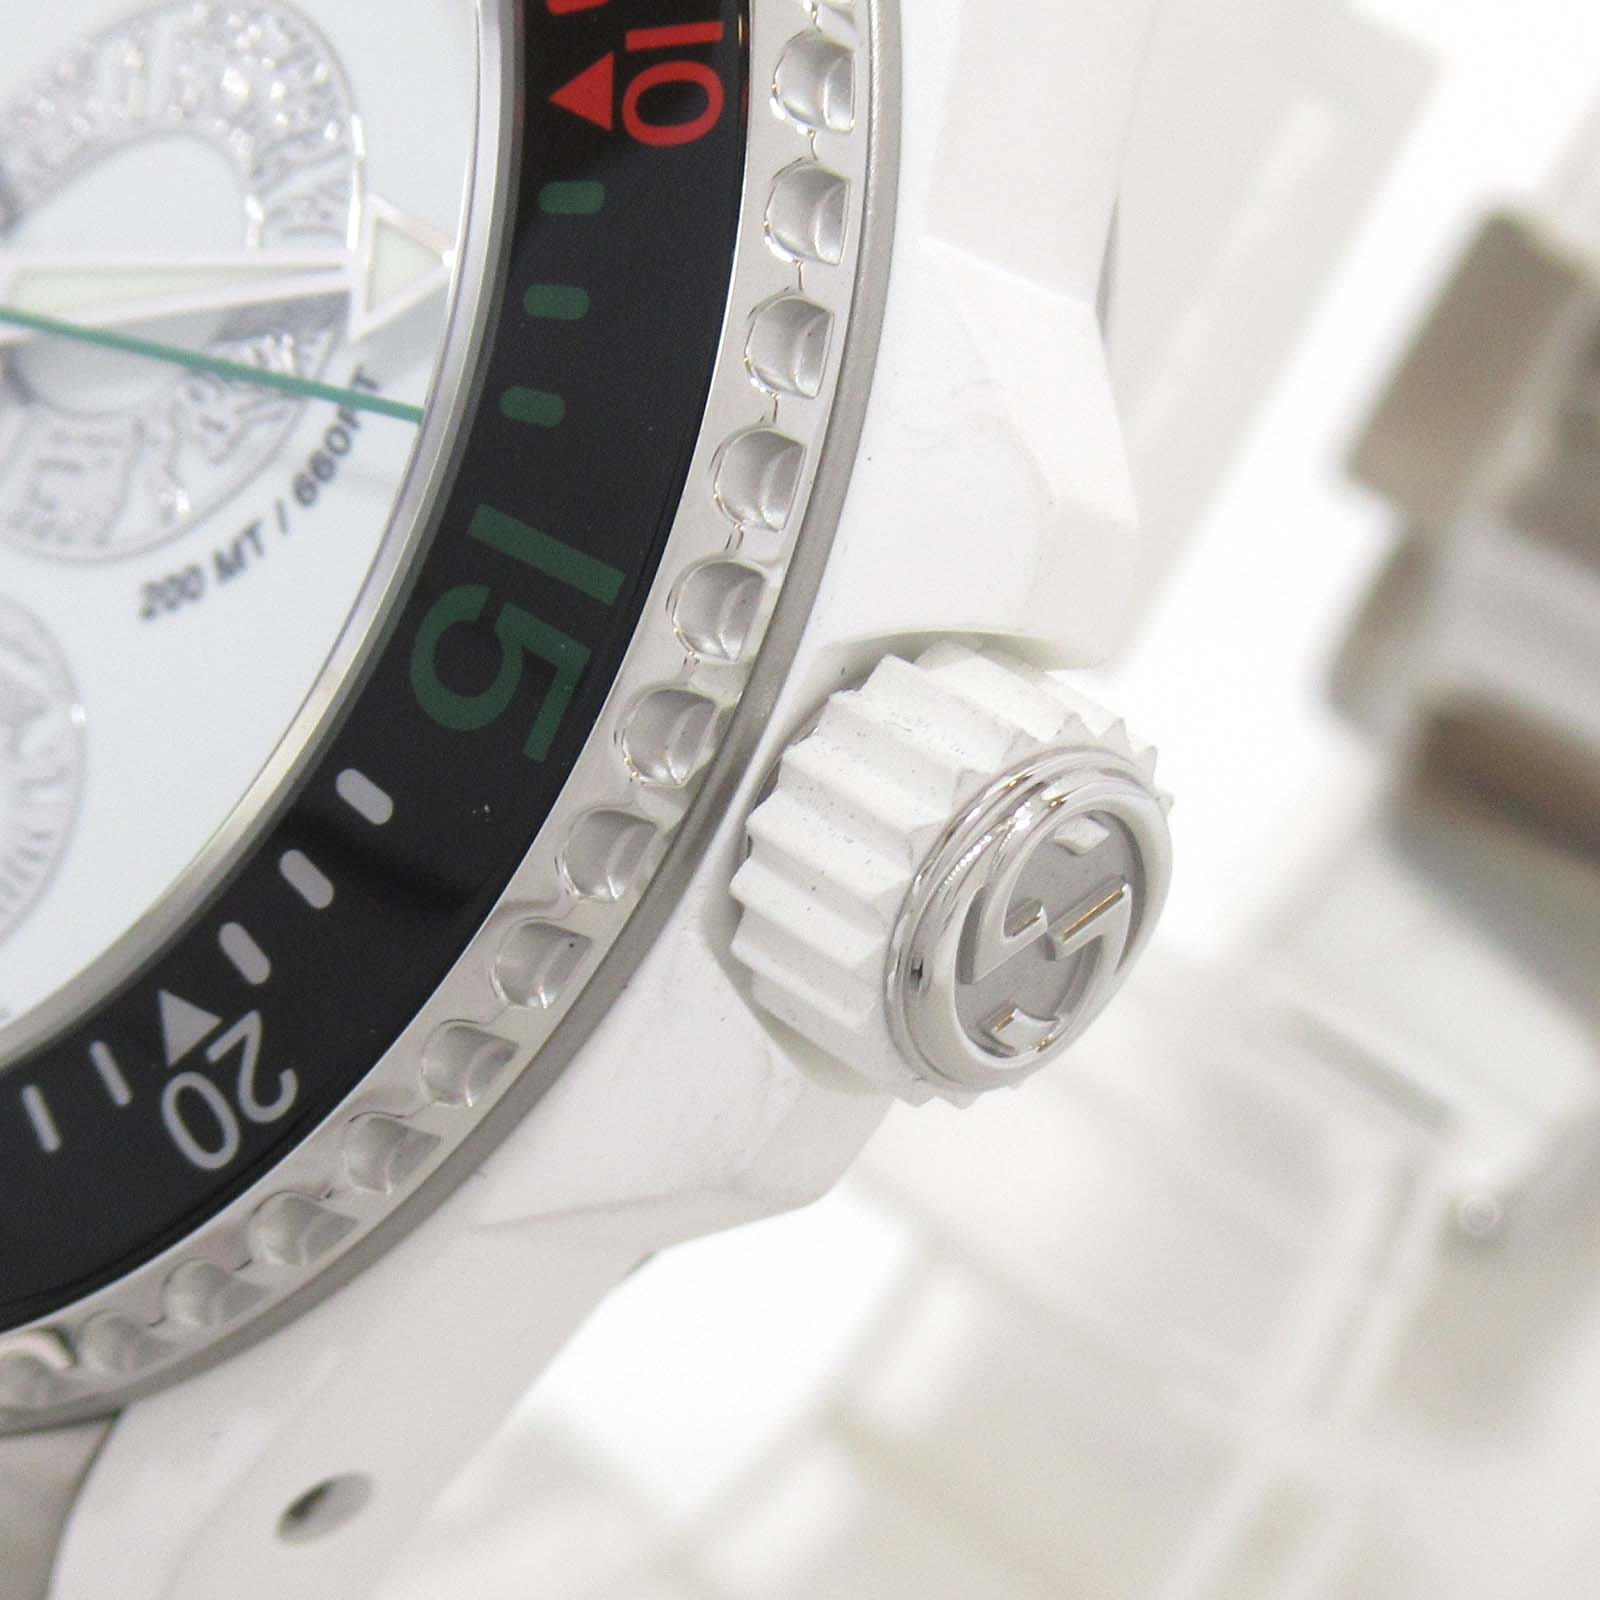 グッチ GUCCI ダイヴスネーク 腕時計 腕時計 時計 ステンレススチール ラバーベルト メンズ ホワイト系 ホワイト 136.3/YA136330  【中古】 | Brandoff銀座